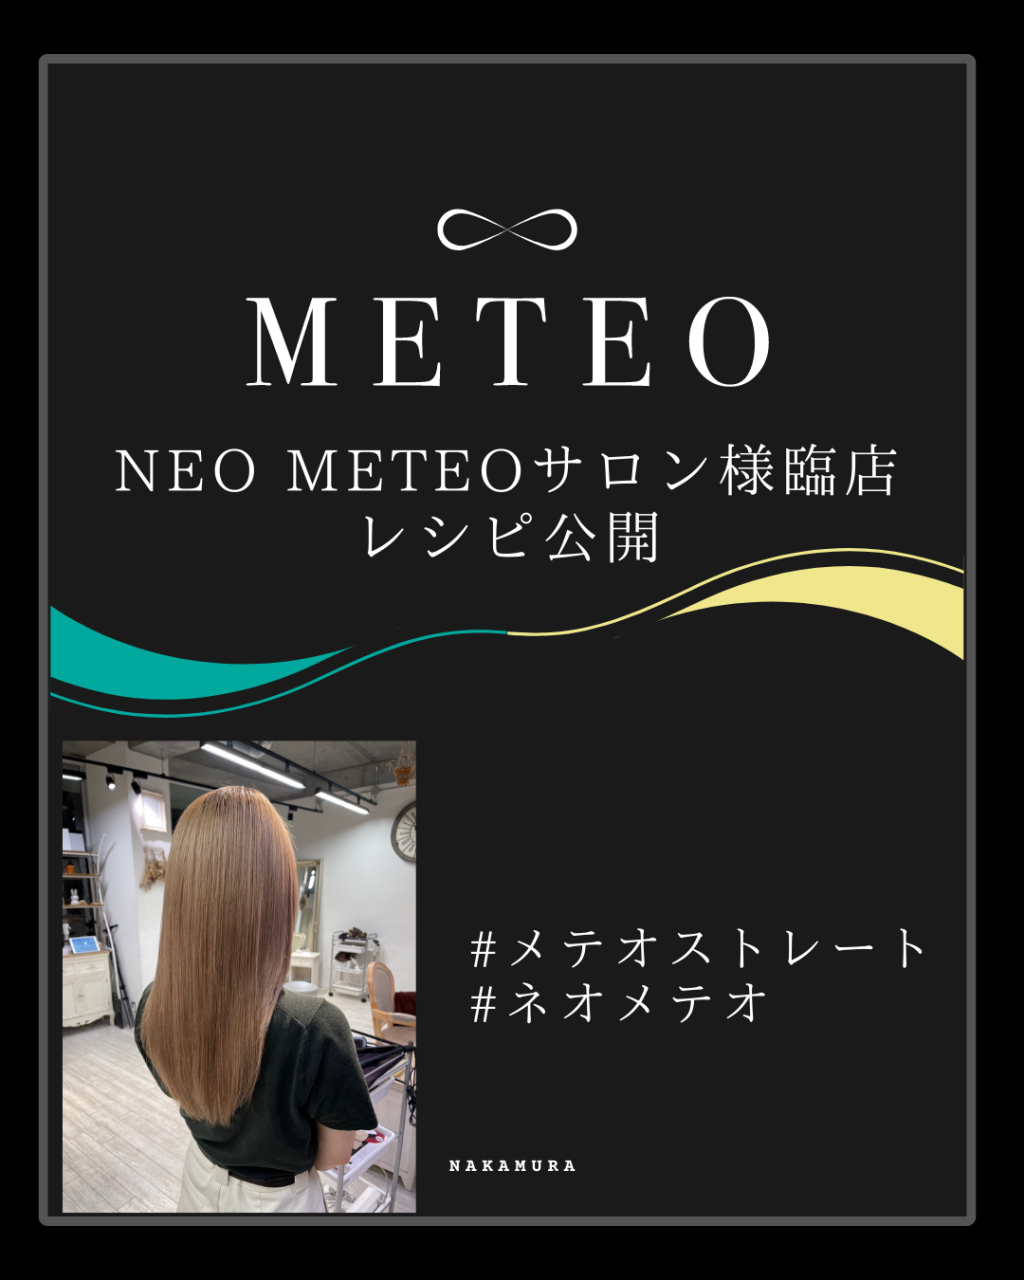 【METEO】ネオメテオ サロン様臨店 レシピ公開